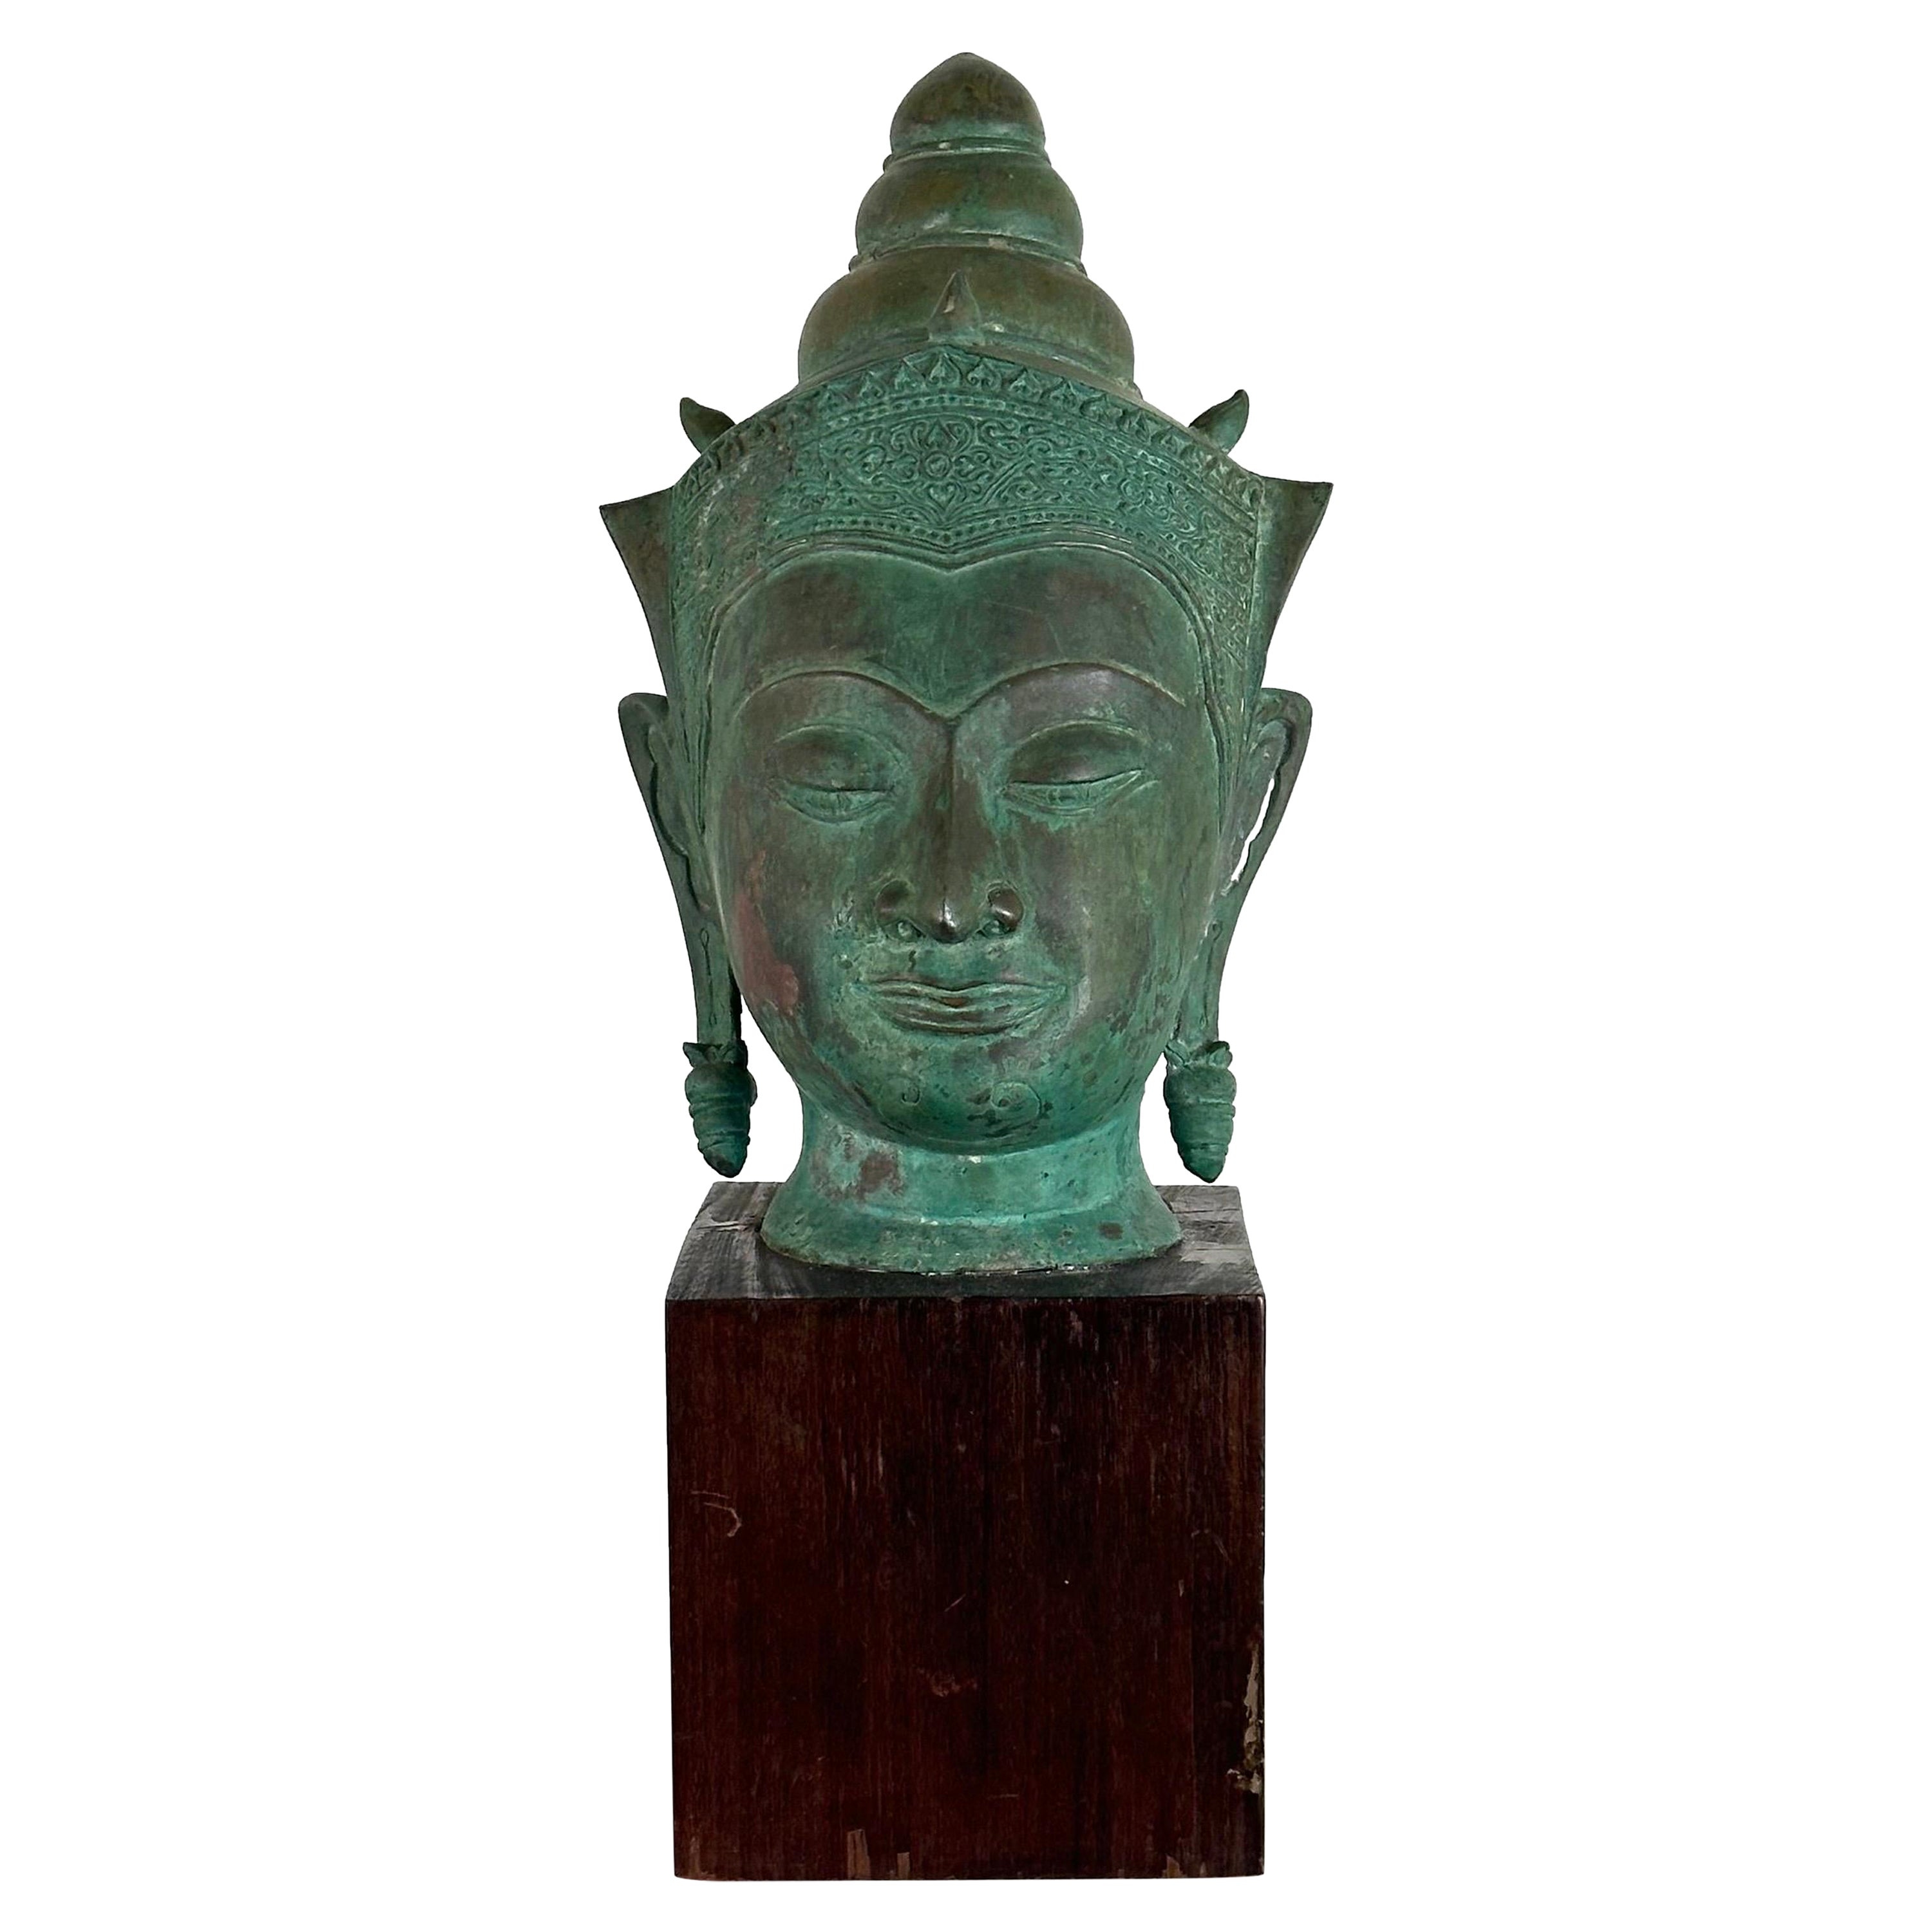 Magnifique tête de Bouddha thaïlandaise du 19ème siècle en bronze sur socle en bois